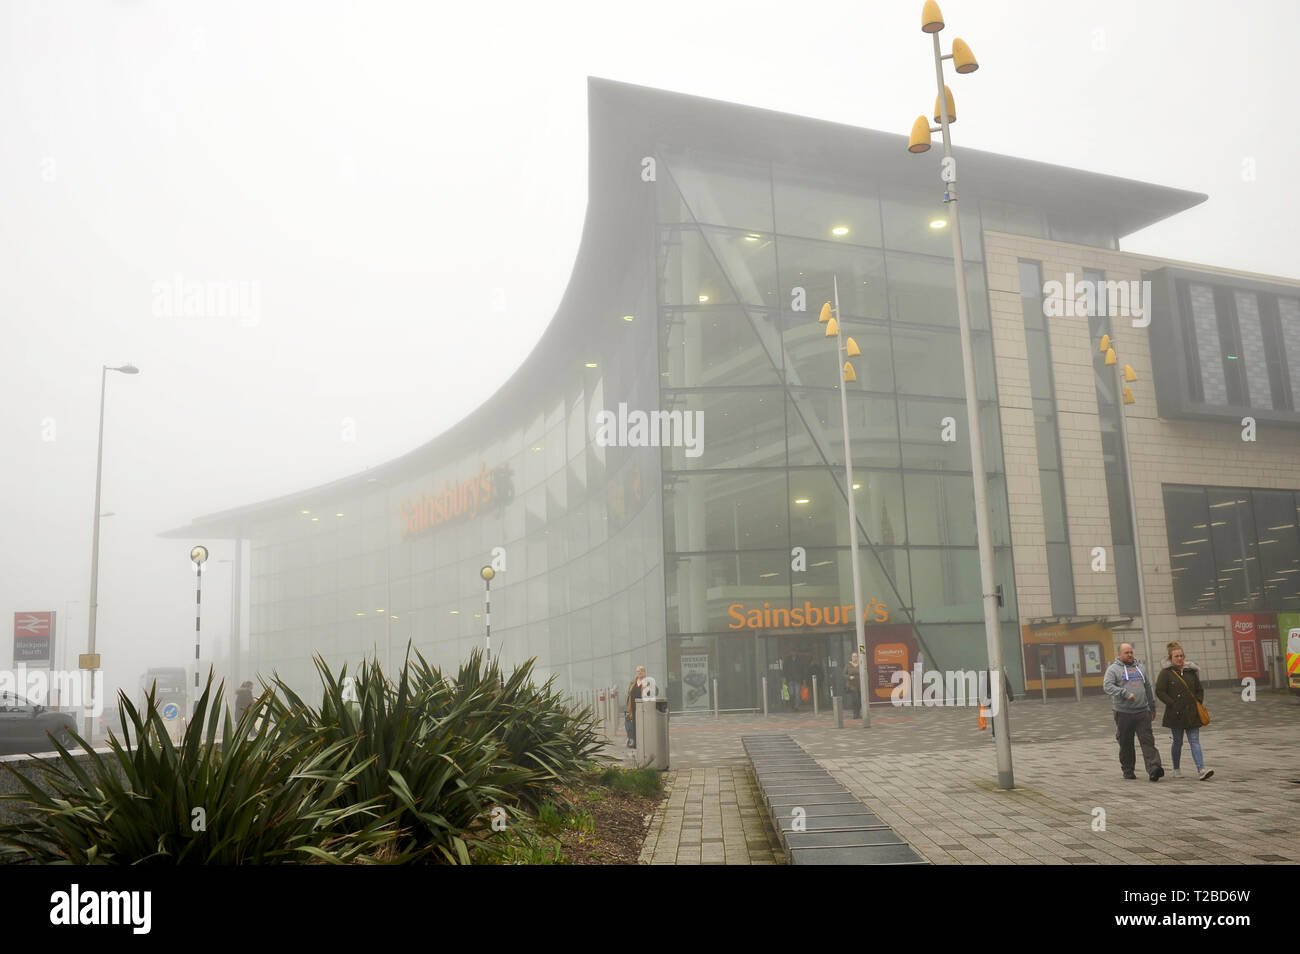 Supermercado Sainsbury's en la niebla, Blackpool, Lancashire, UK Foto de stock